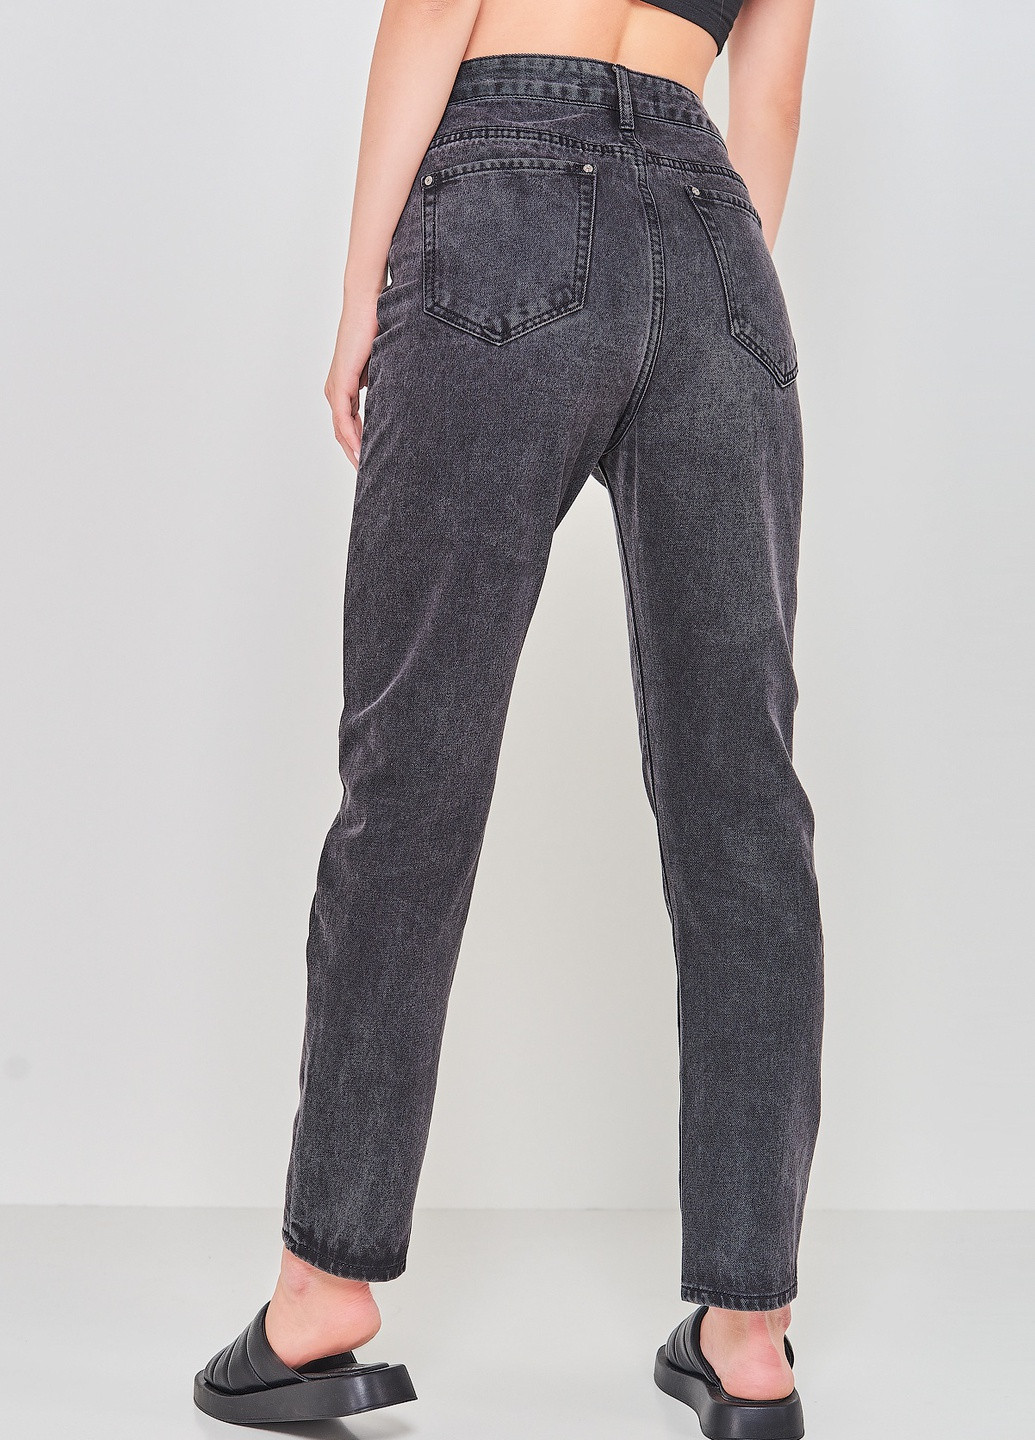 Темно-серые демисезонные джинсы Avia jeans